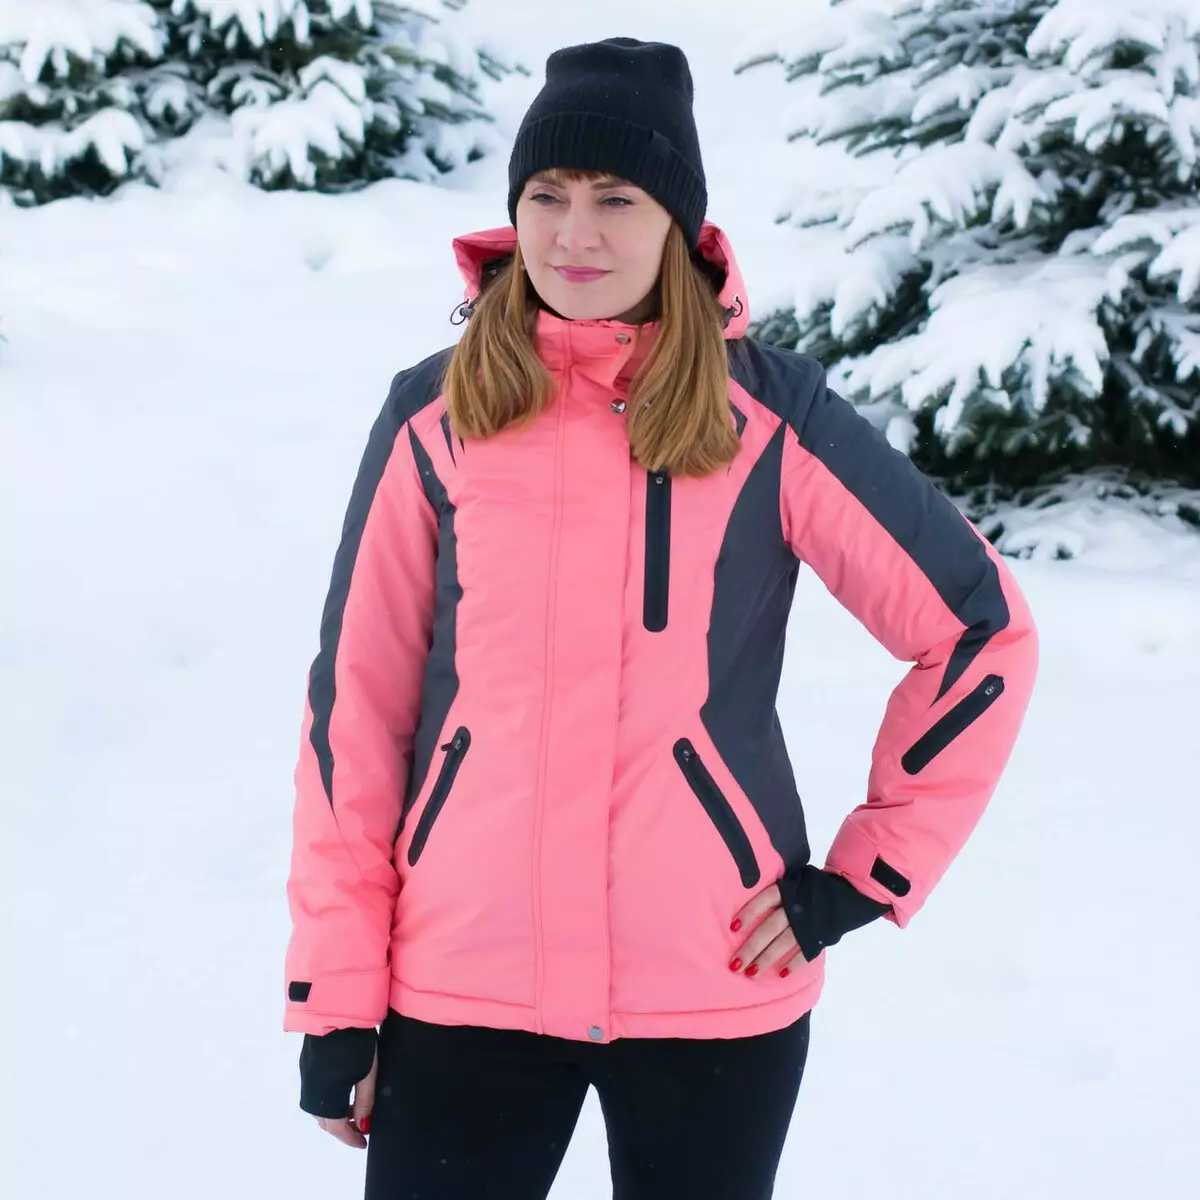 Ski -jac: Winterjasje foar froulju foar cross-laning, opwarmje, opwarmje en opwarmje en folwoeksen skiëtsjassen. Hoe kinne jo kieze foar reedriden? 20201_36